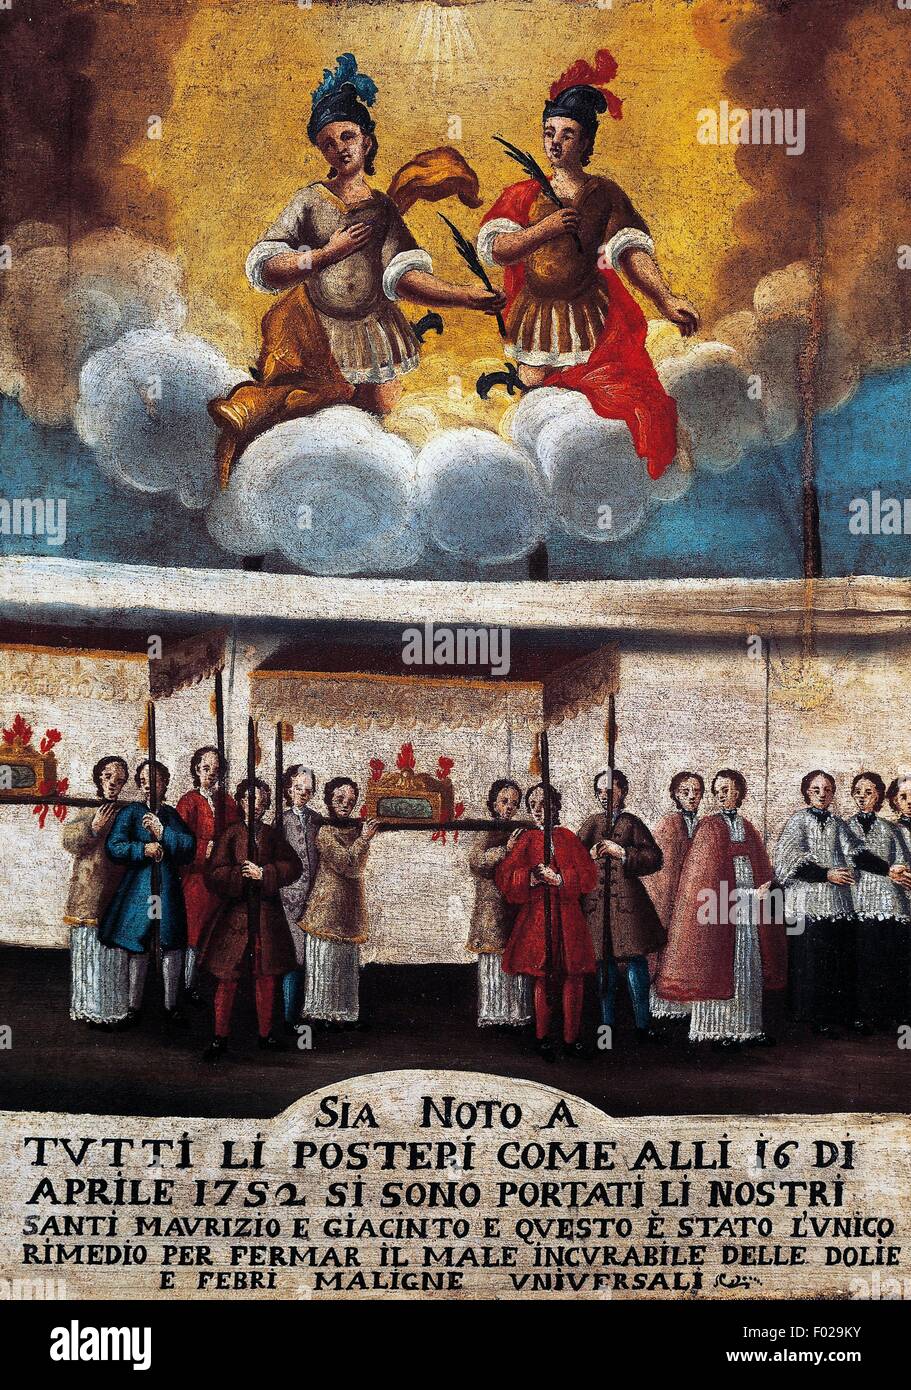 L'exécution fidèle St Maurice et Saint Hyacinthe en procession, patrons de Coccaglio, ex voto, l'église paroissiale de Coccaglio, aujourd'hui l'église paroissiale de St Jean le Baptiste, Lombardie, Italie, 1782. Banque D'Images